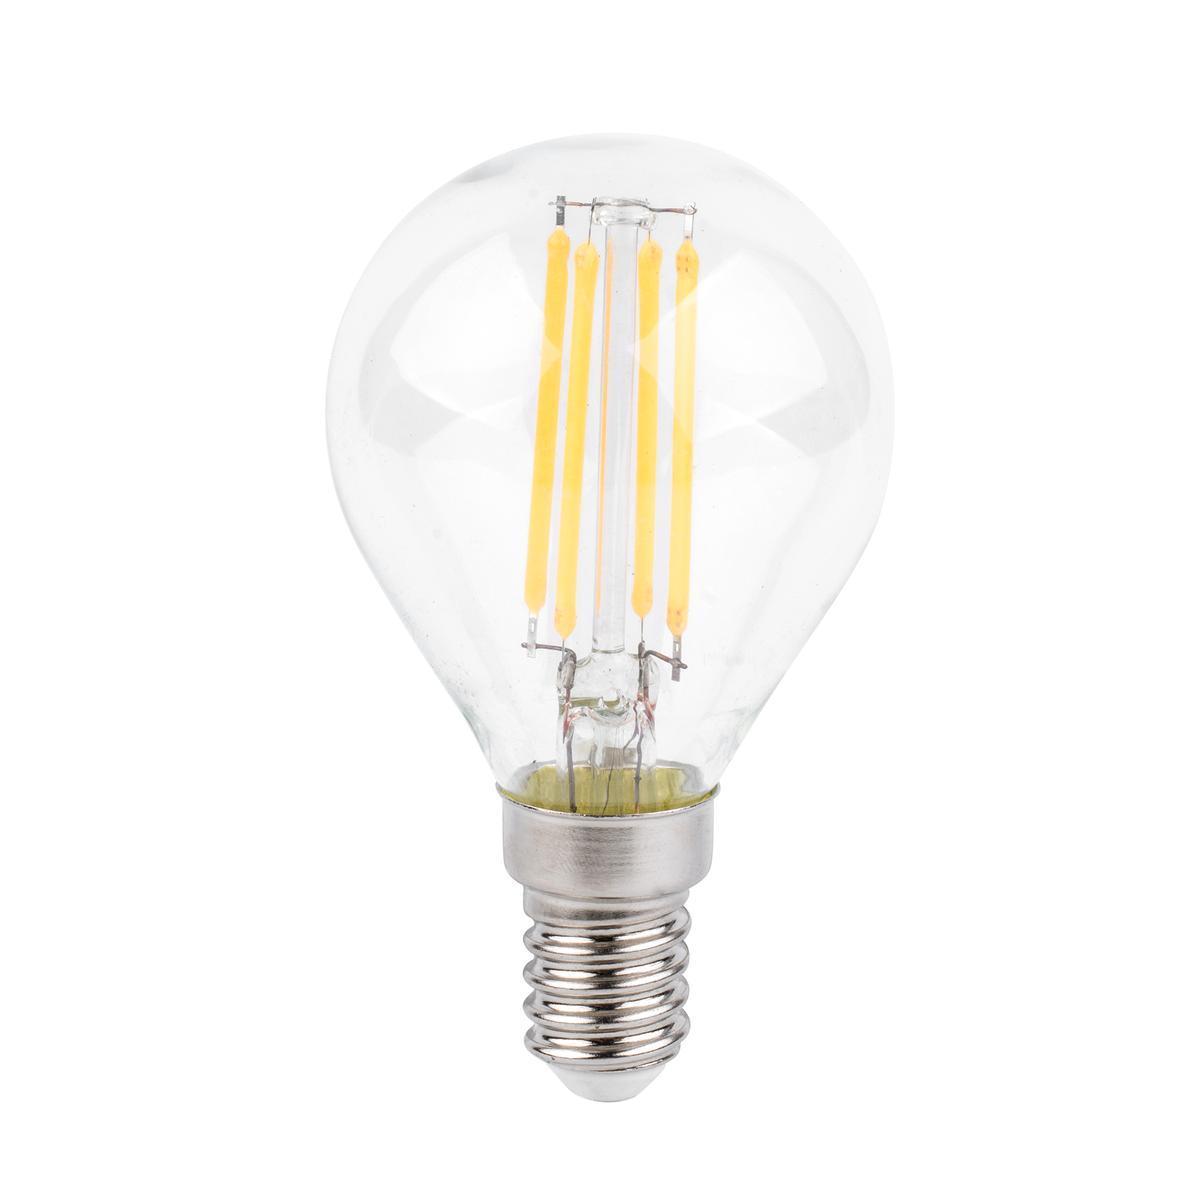 Ampoule à filaments LED G45 E14 - 400 LM - Transparent, blanc chaud